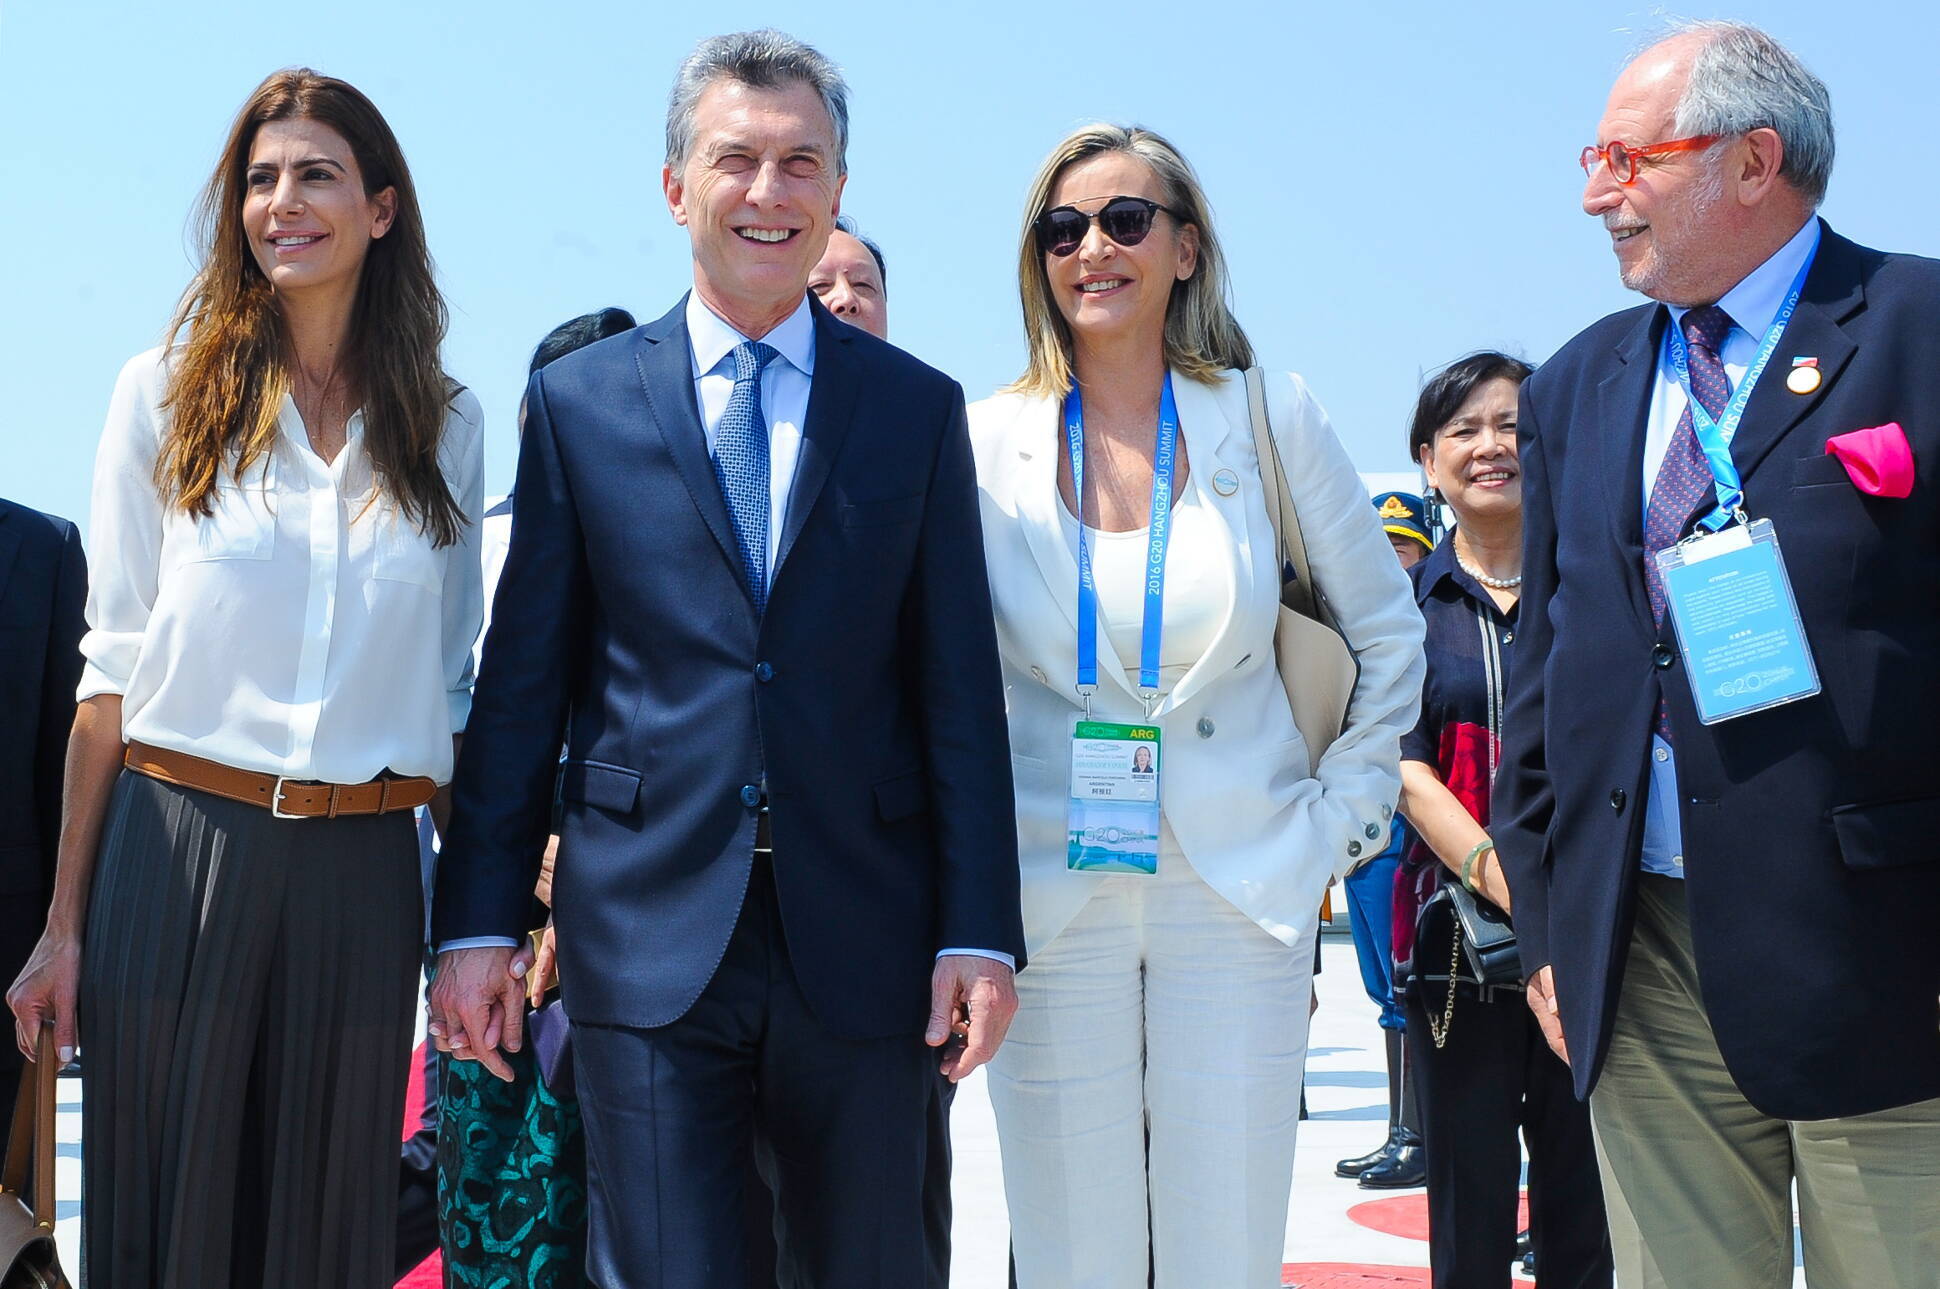 El presidente Mauricio Macri llegó a China para participar de la reunión del G20